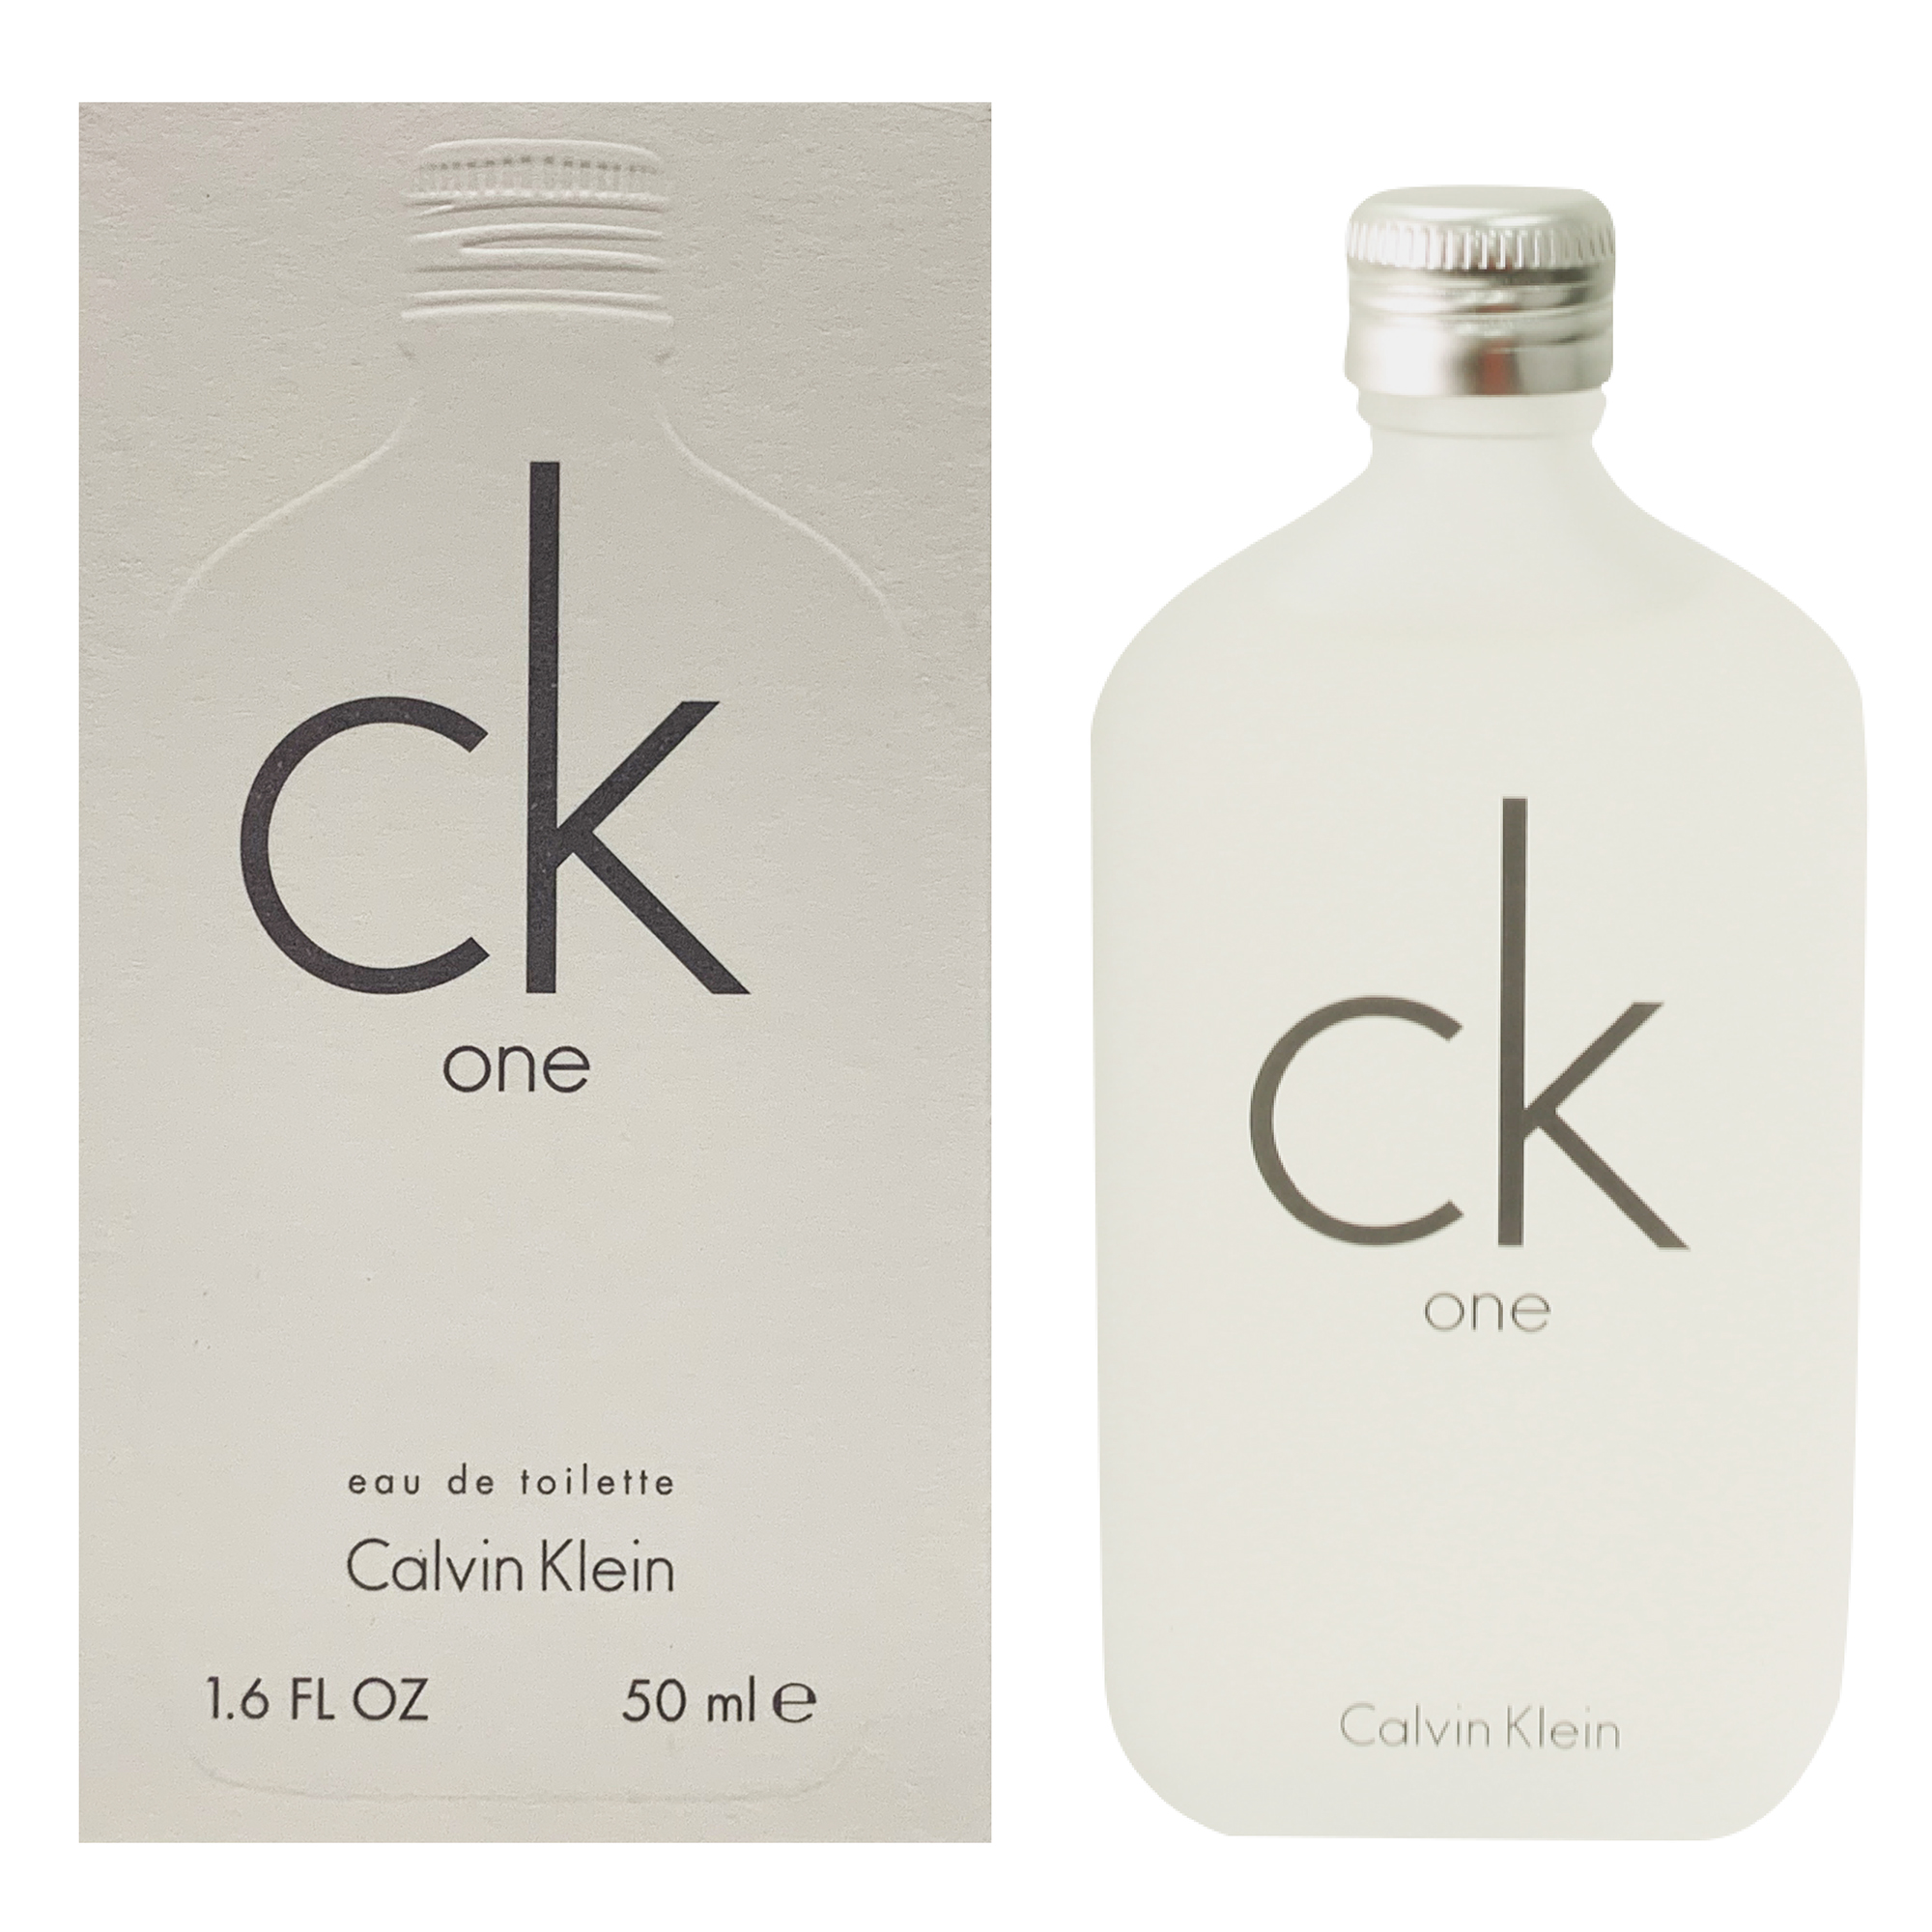 Calvin Klein CK One Eau de Toilette, Unisex Perfume, 1.6 oz - image 2 of 5